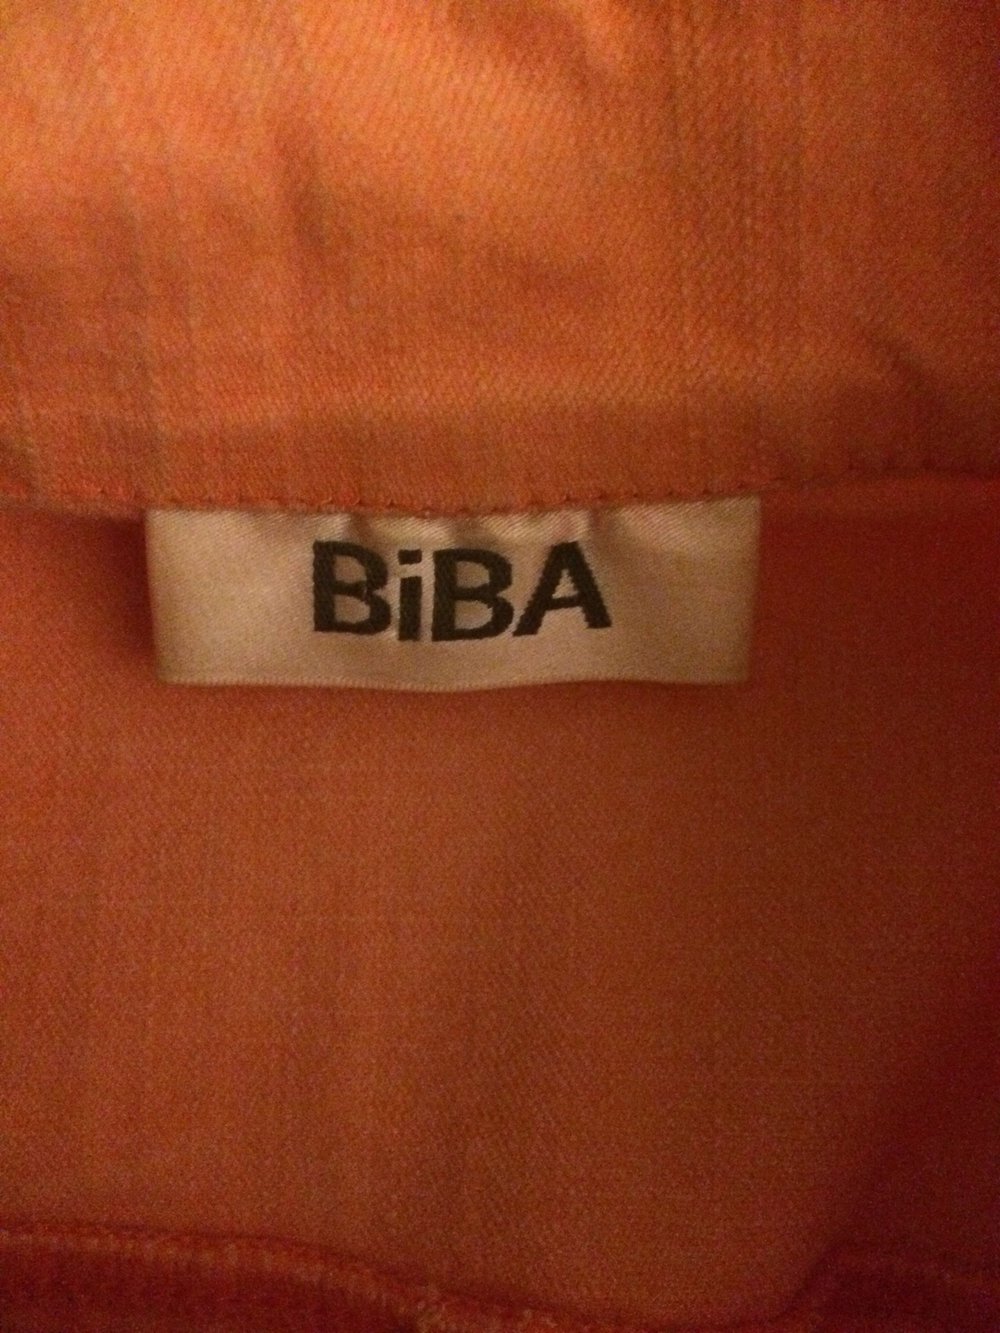 Pastell orangene BIBA Jacke im Jeans-Look